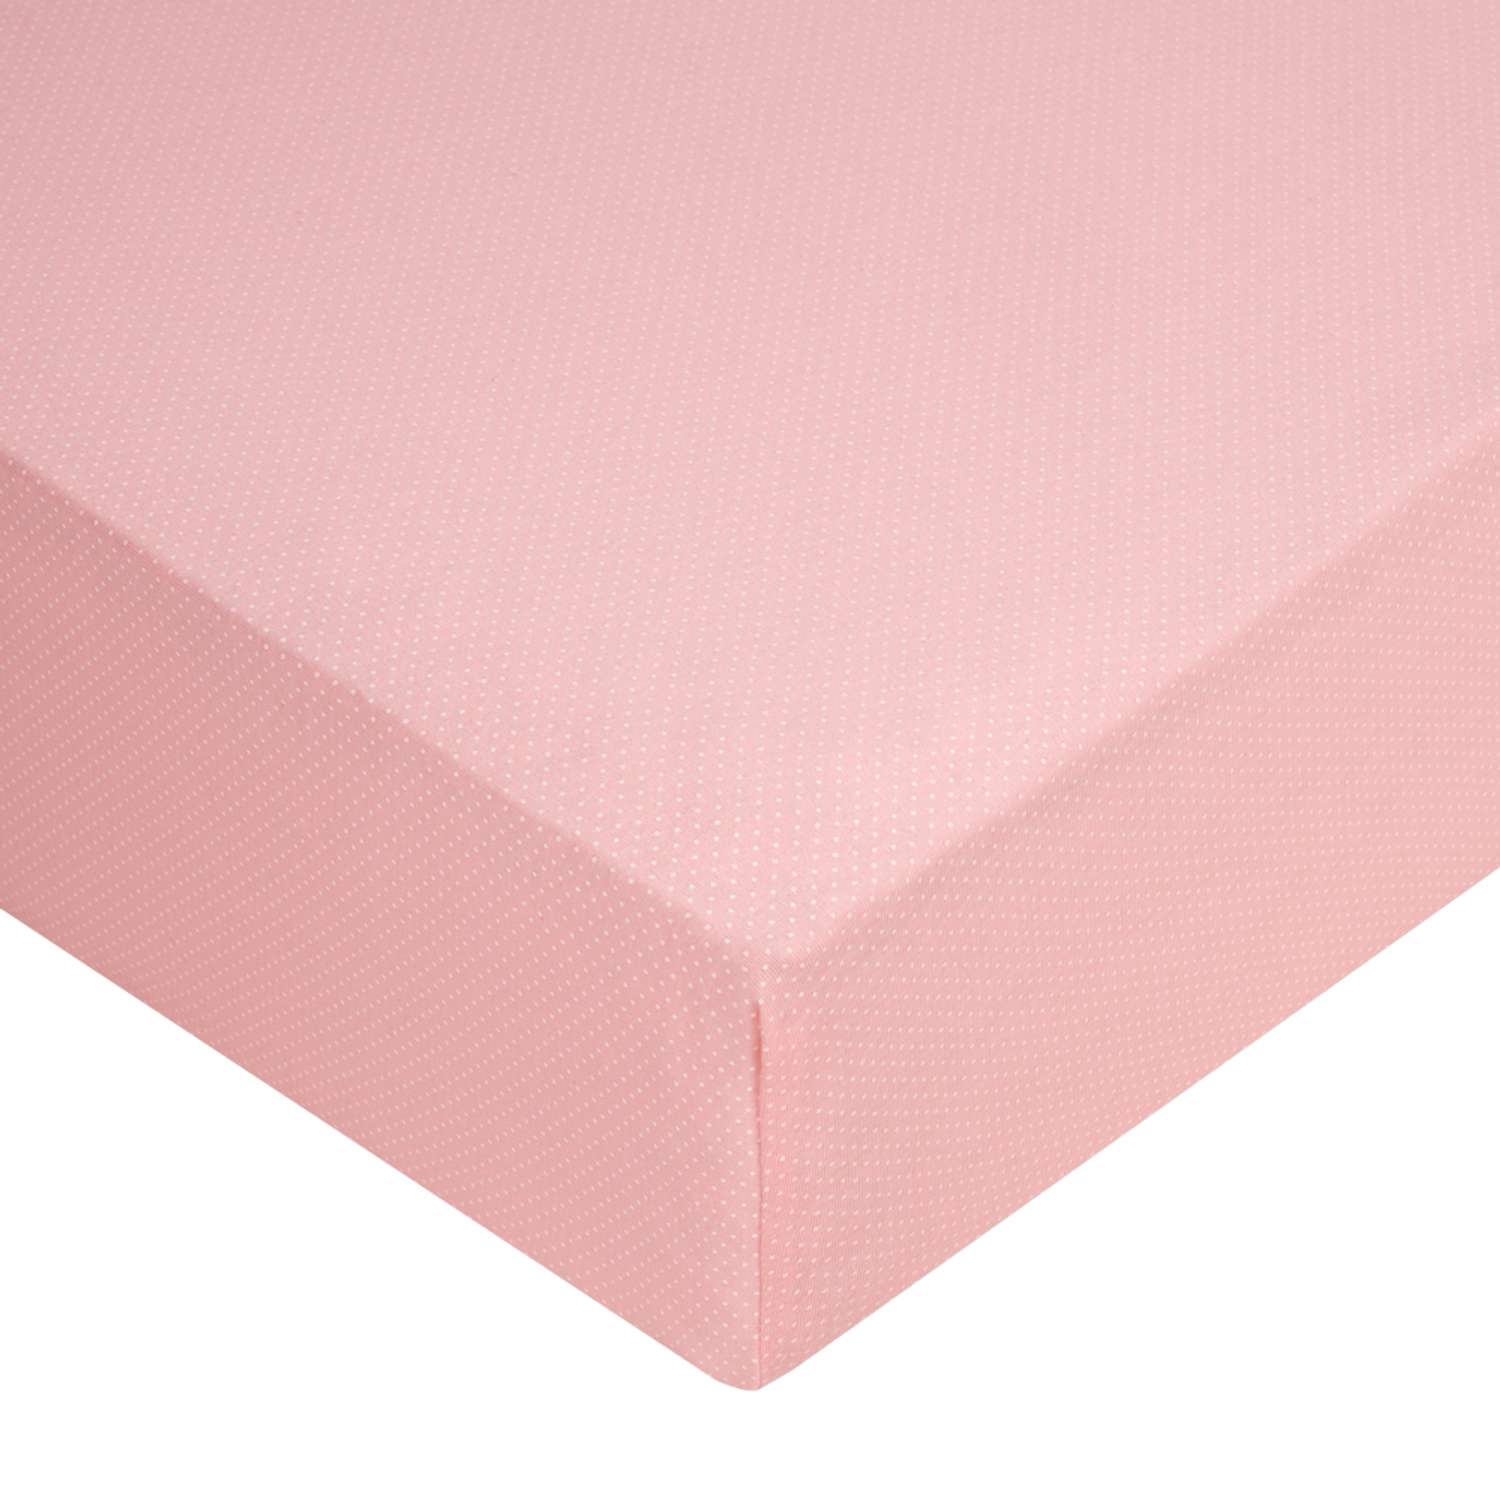 Комплект простыней Mrs.Stretch Mr.Jersy ясельных трикотажных натяжных на резинке по периметру 2 шт 60х120х15 см цвет розовый - фото 6